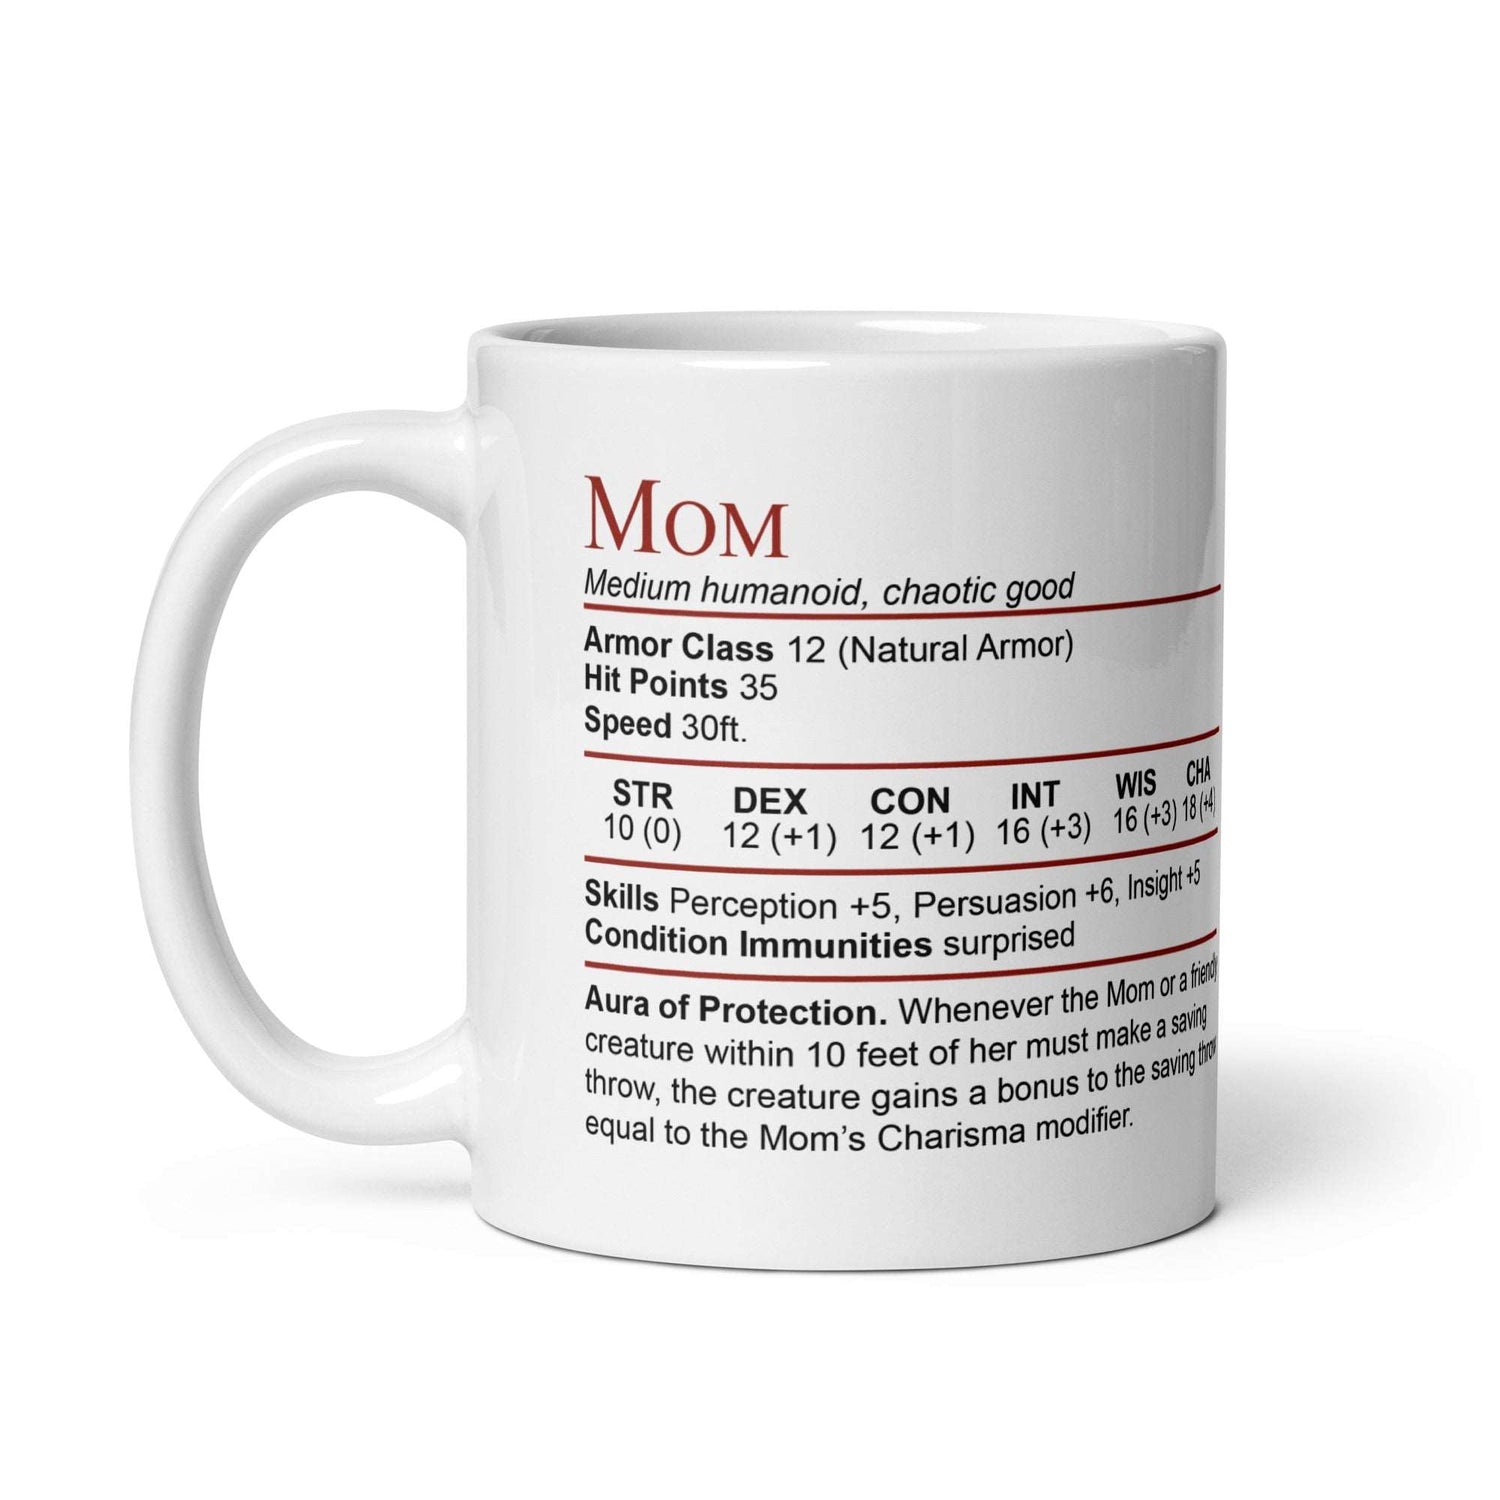 DnD Mom Stat Block Mug – Funny Dungeons & Dragons Coffee Mug for Mom Mug